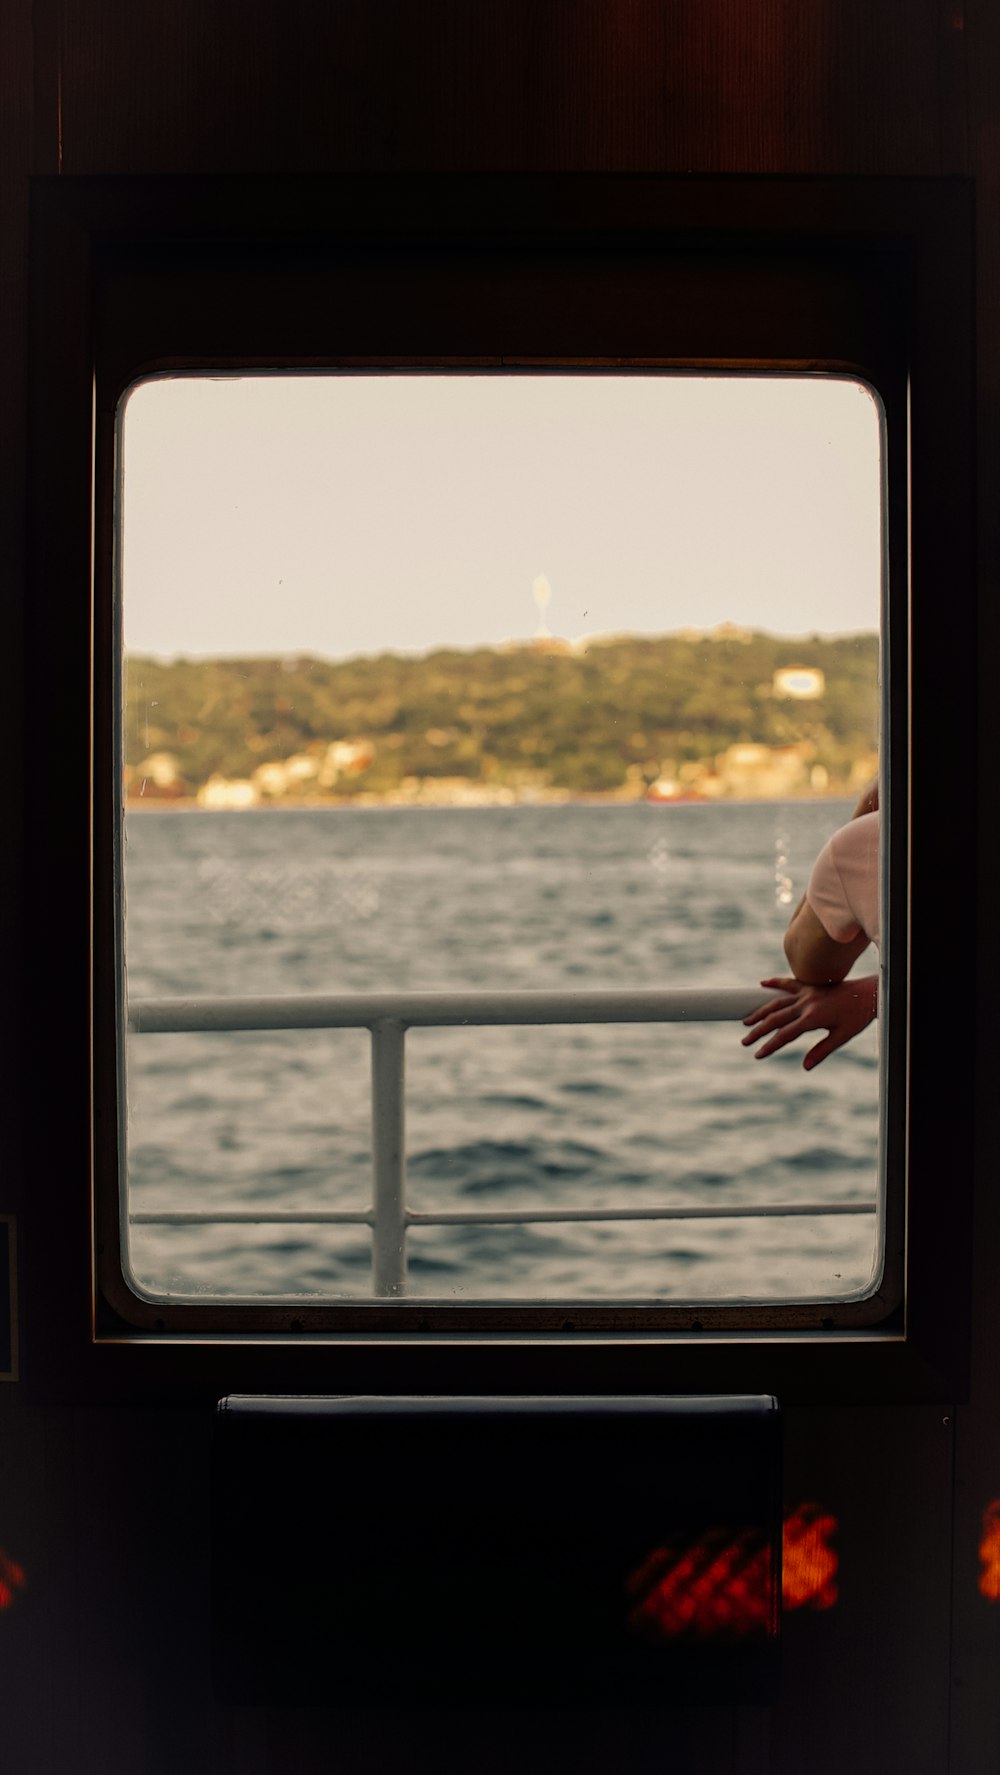 La mano de una persona se ve a través de la ventana de un bote